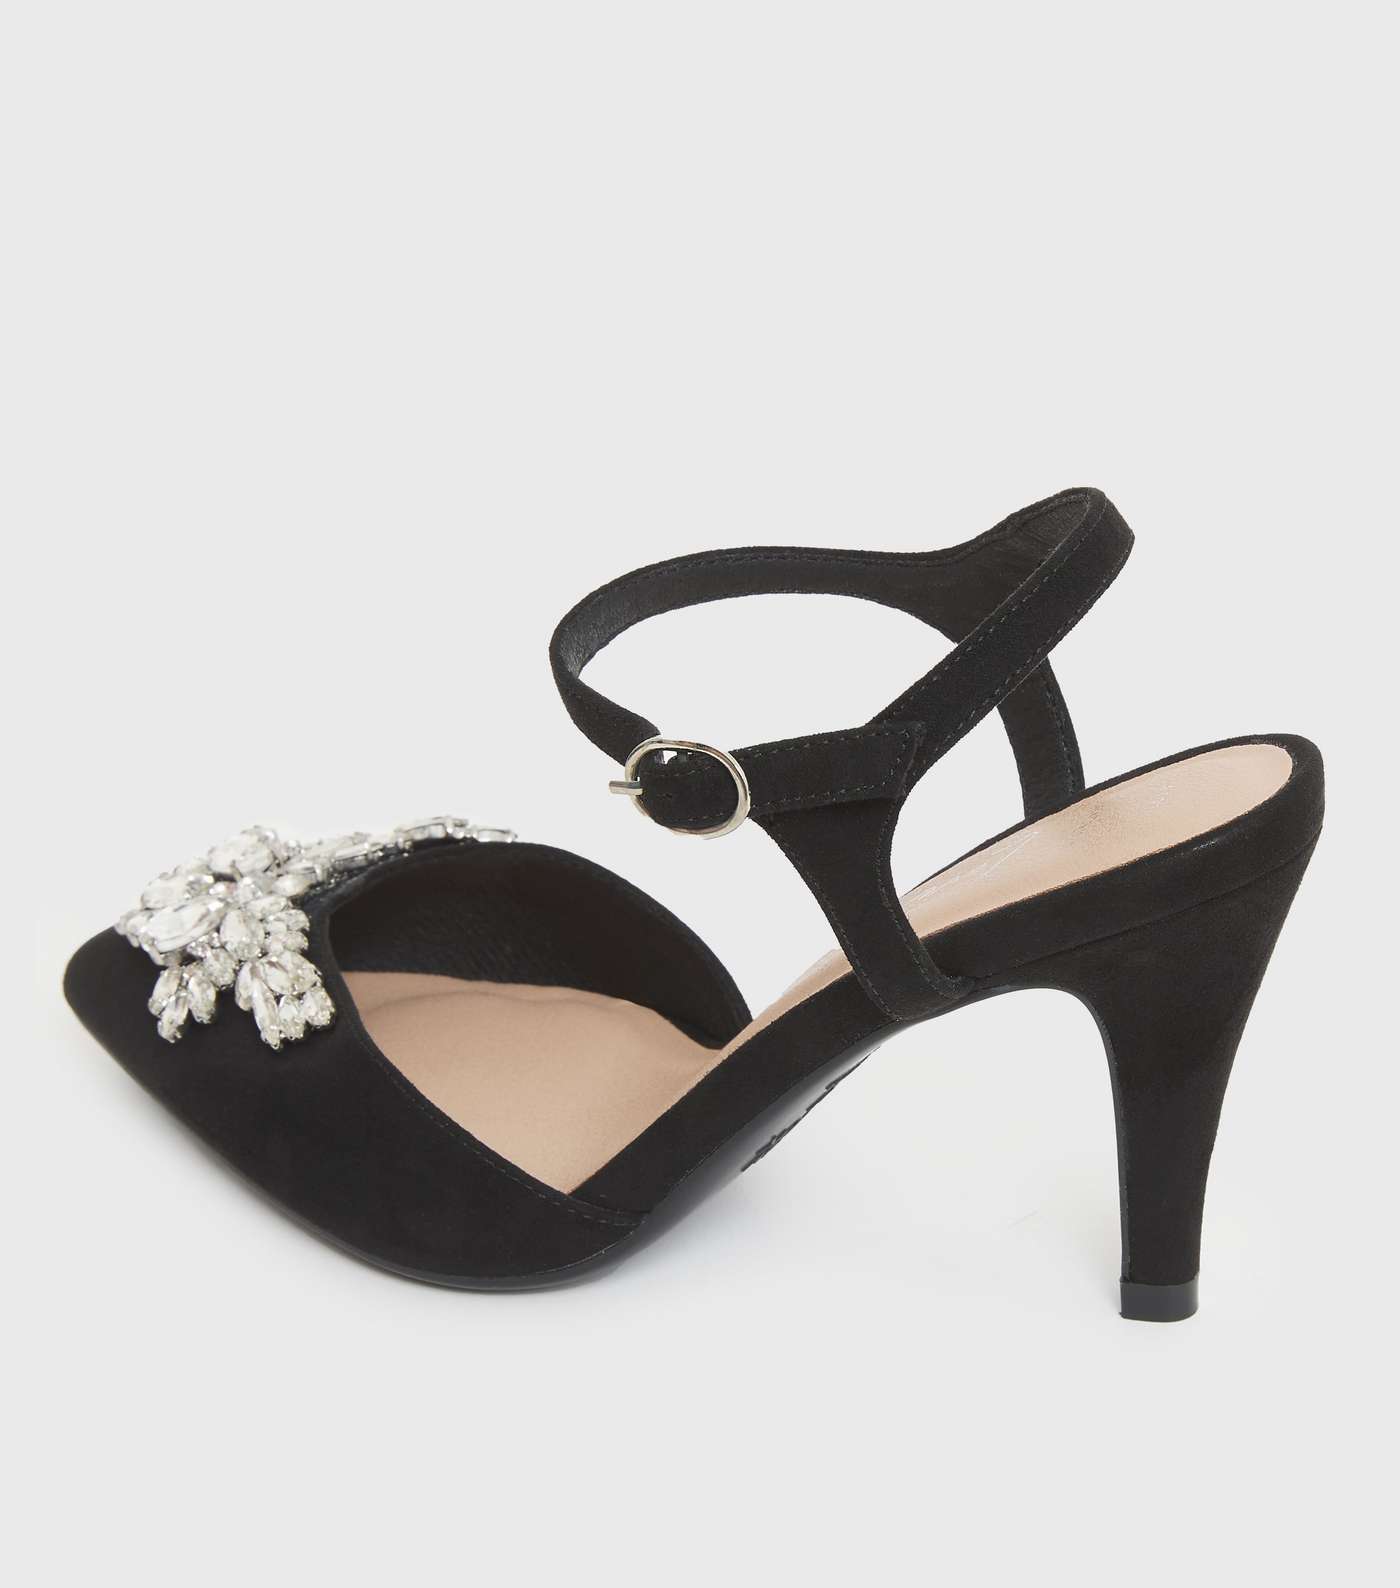 Wide Fit Black Embellished Stiletto Heel Court Shoes Image 4